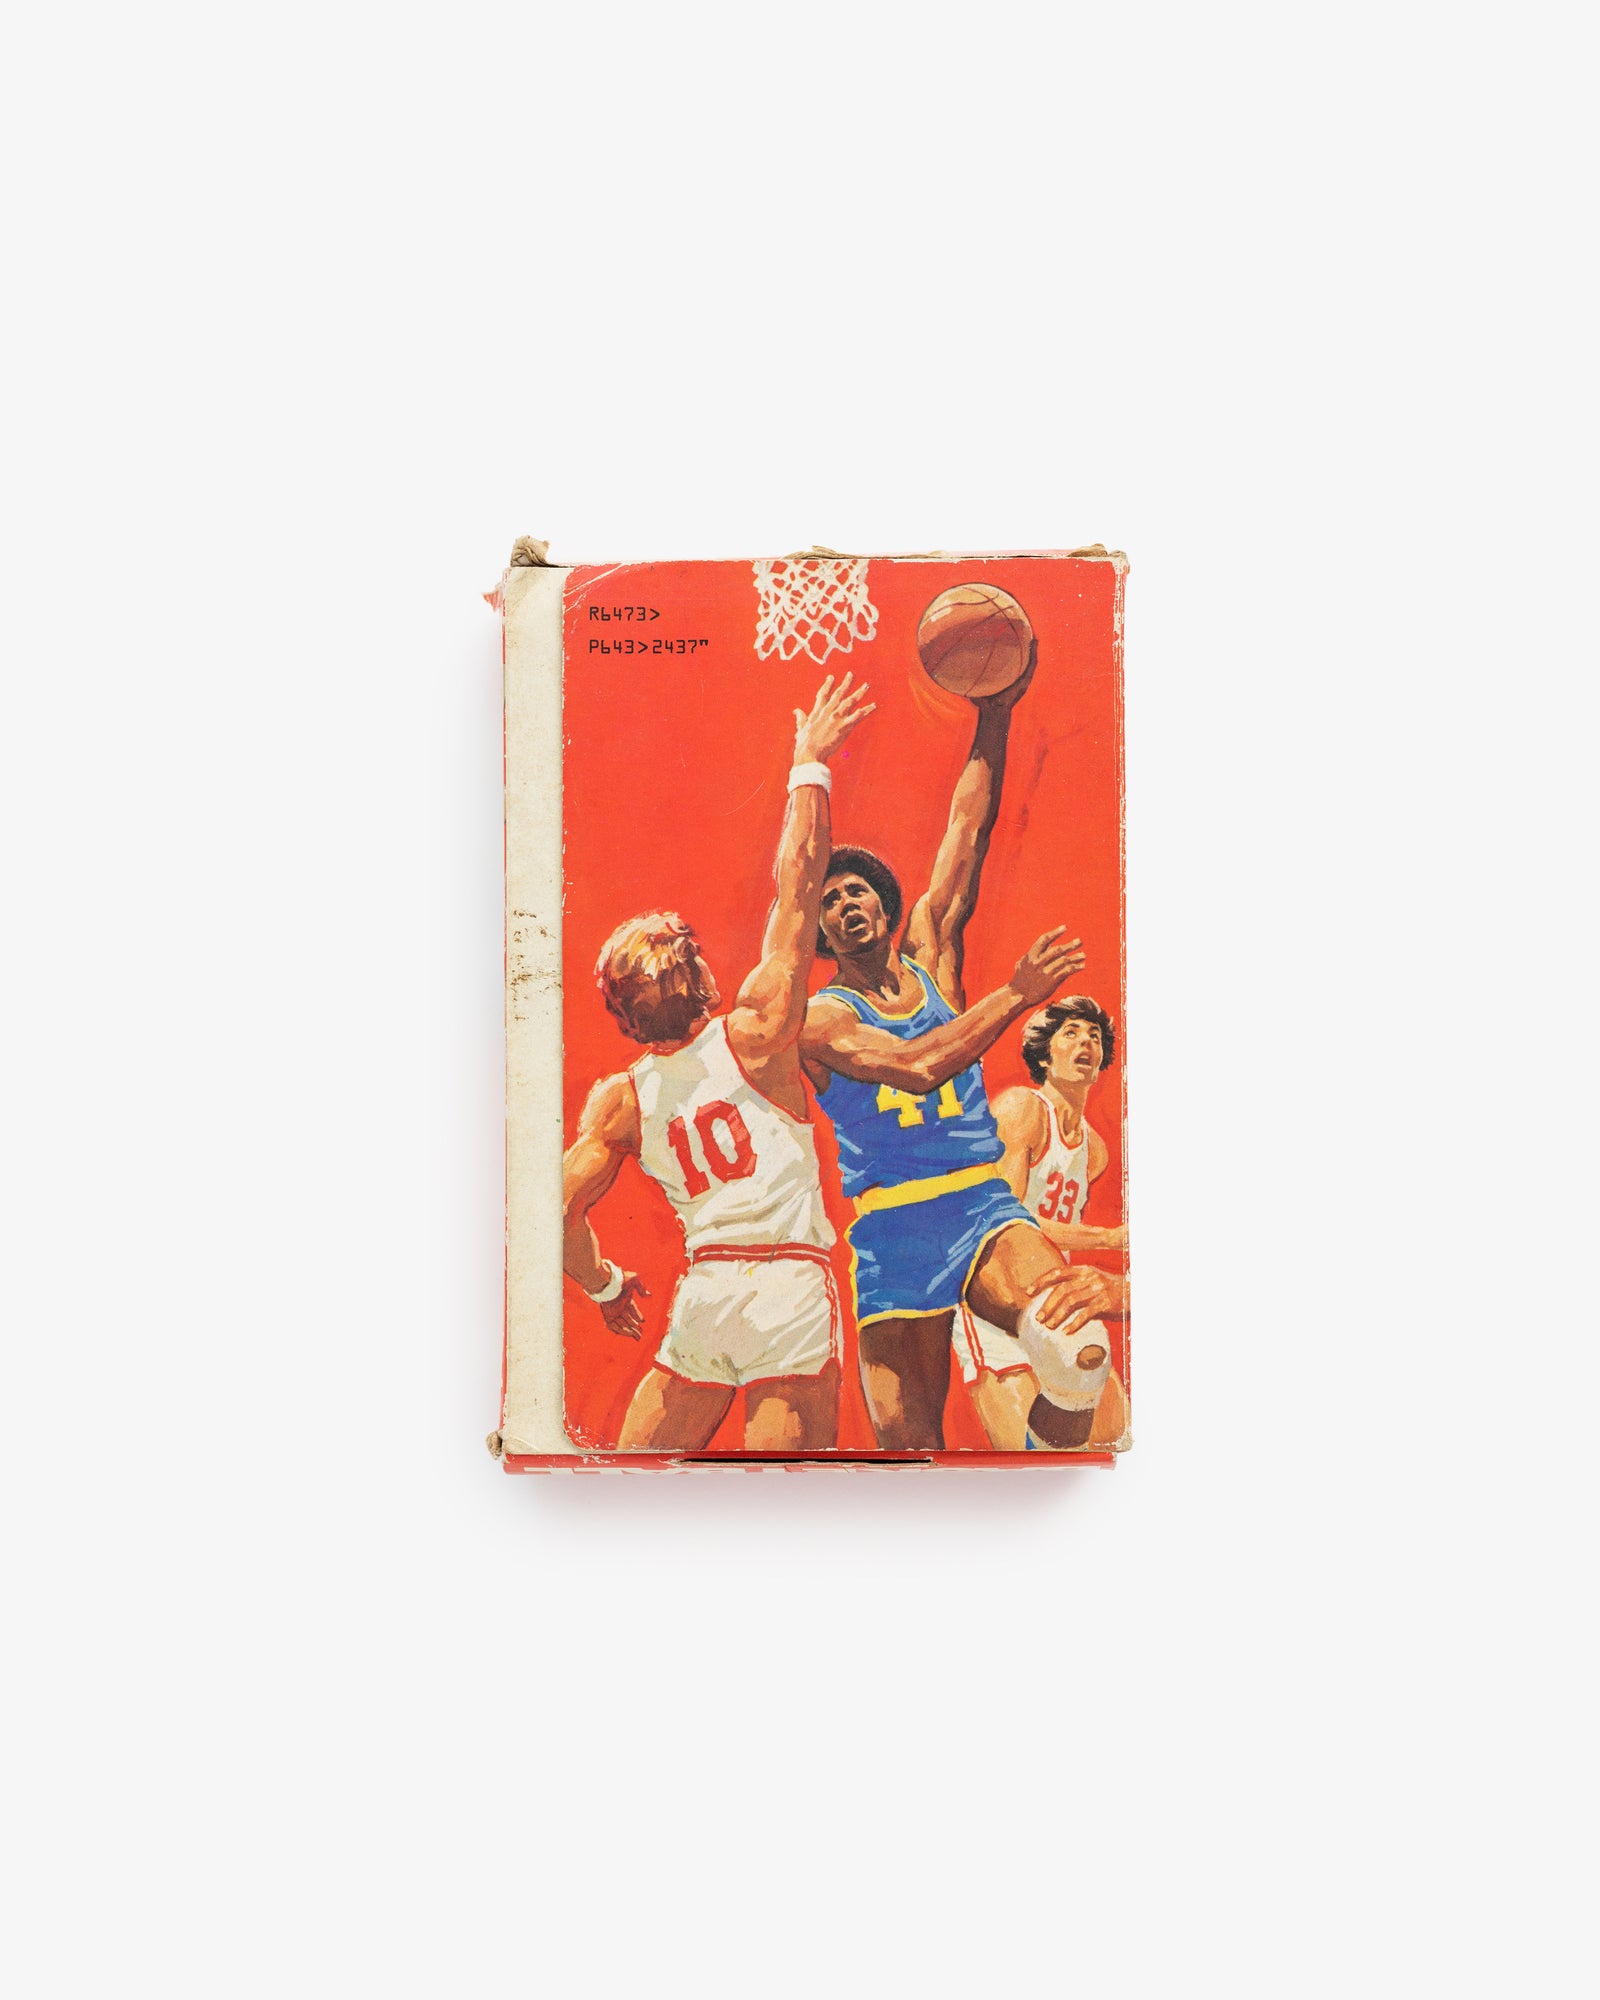 Mattel Electronic 1970's Basketball Game